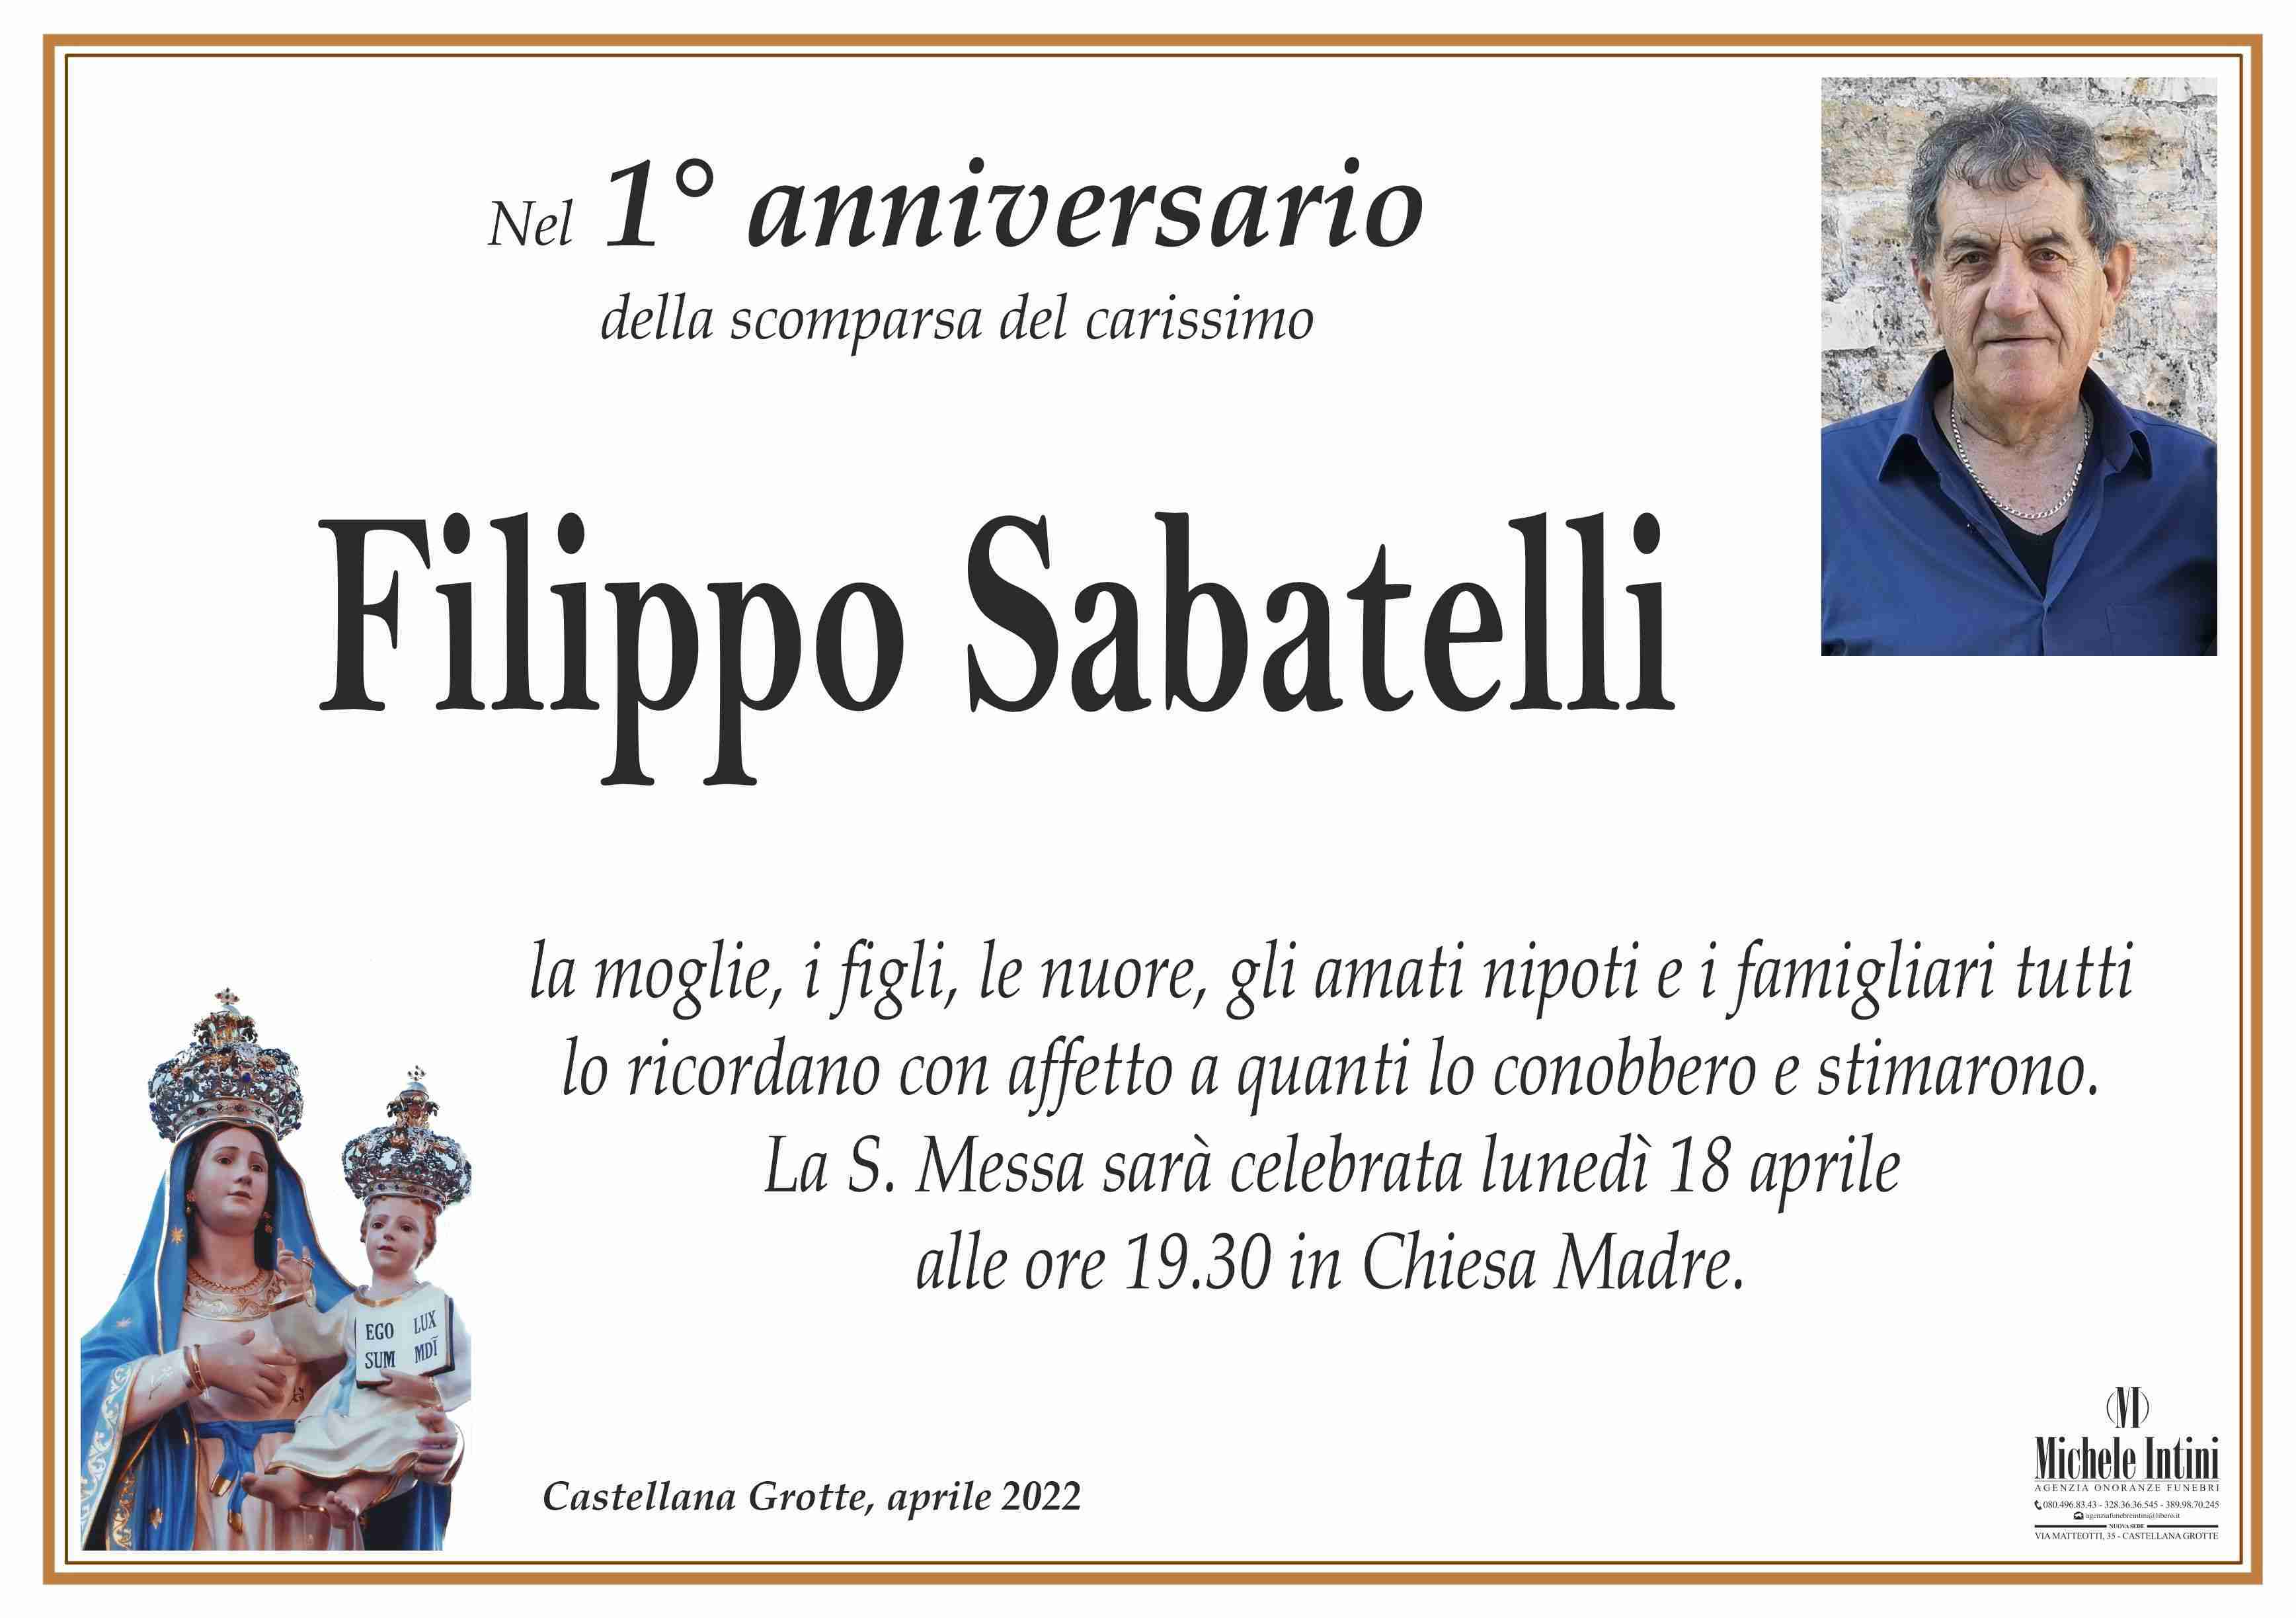 Filippo Sabatelli